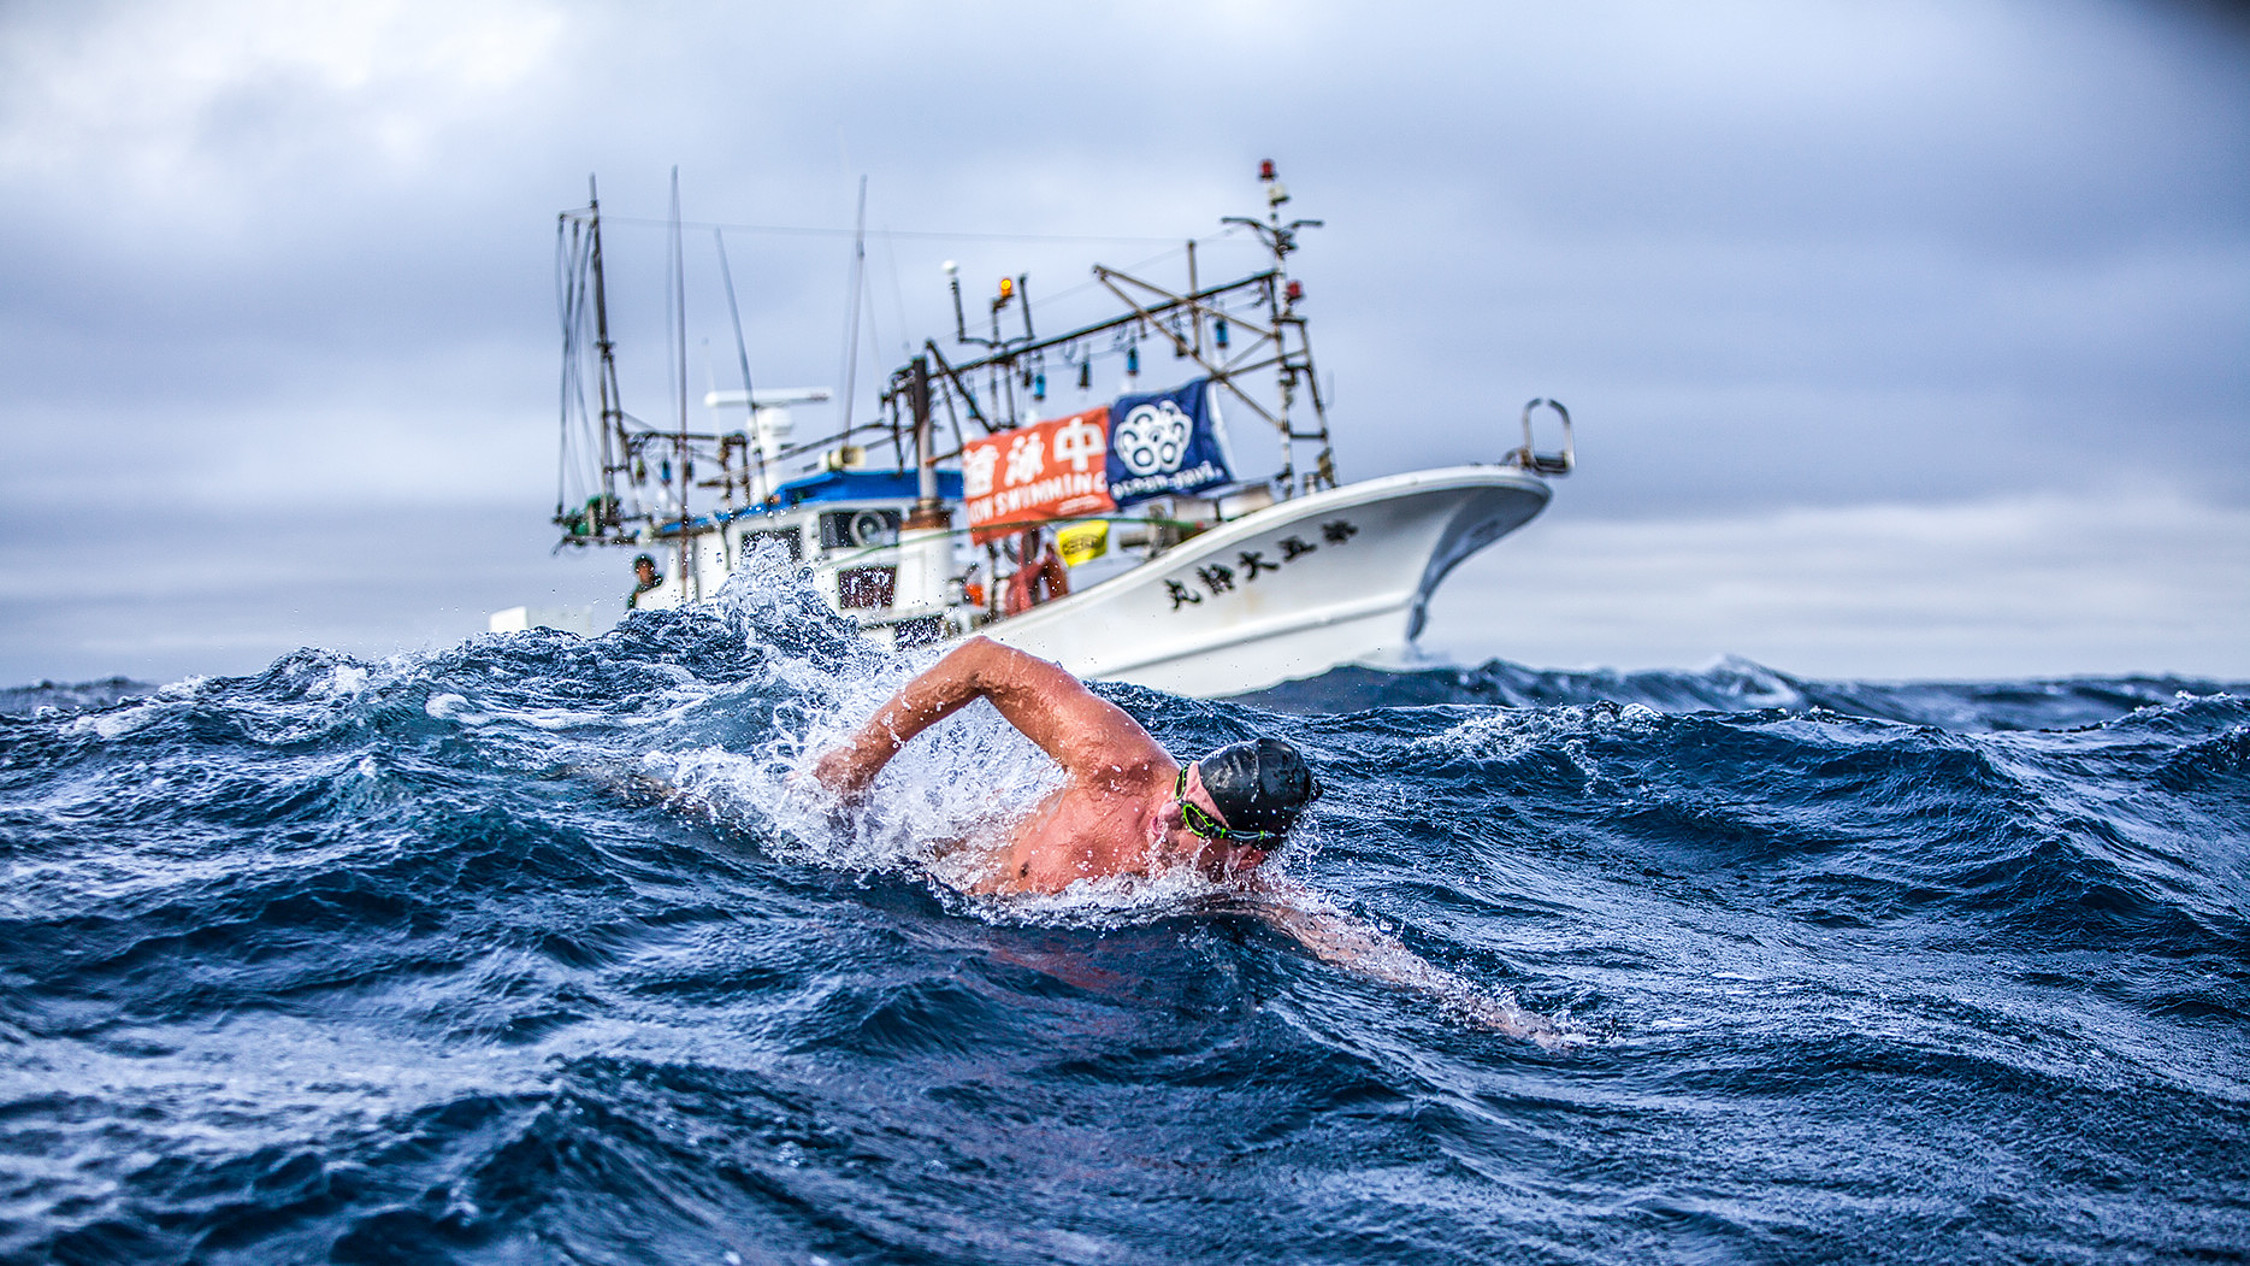 Schwimmer Andre Wiersig in stürmischem Ozean, im Hintergrund ist ein Boot zu sehen.